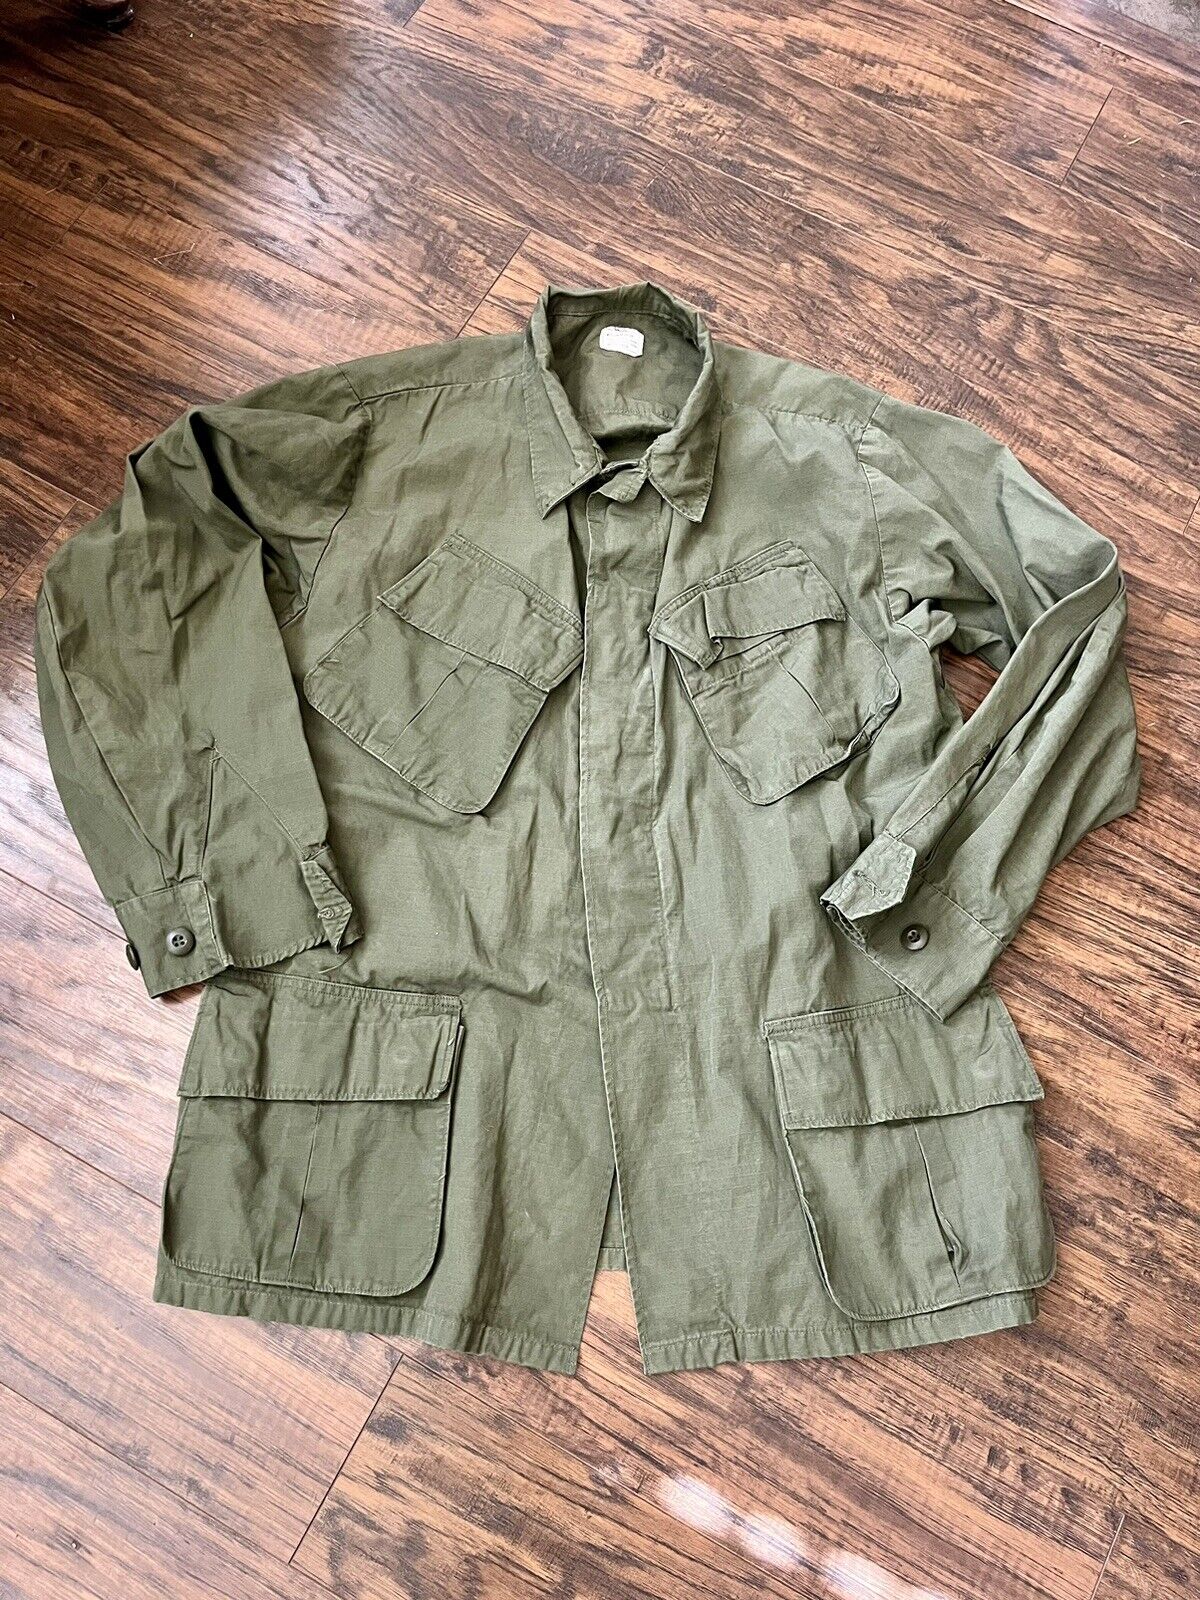 Vintage Army Vietnam Era Jungle Jacket Ripstop OG 107 Bonham Mfg Med. 60’s